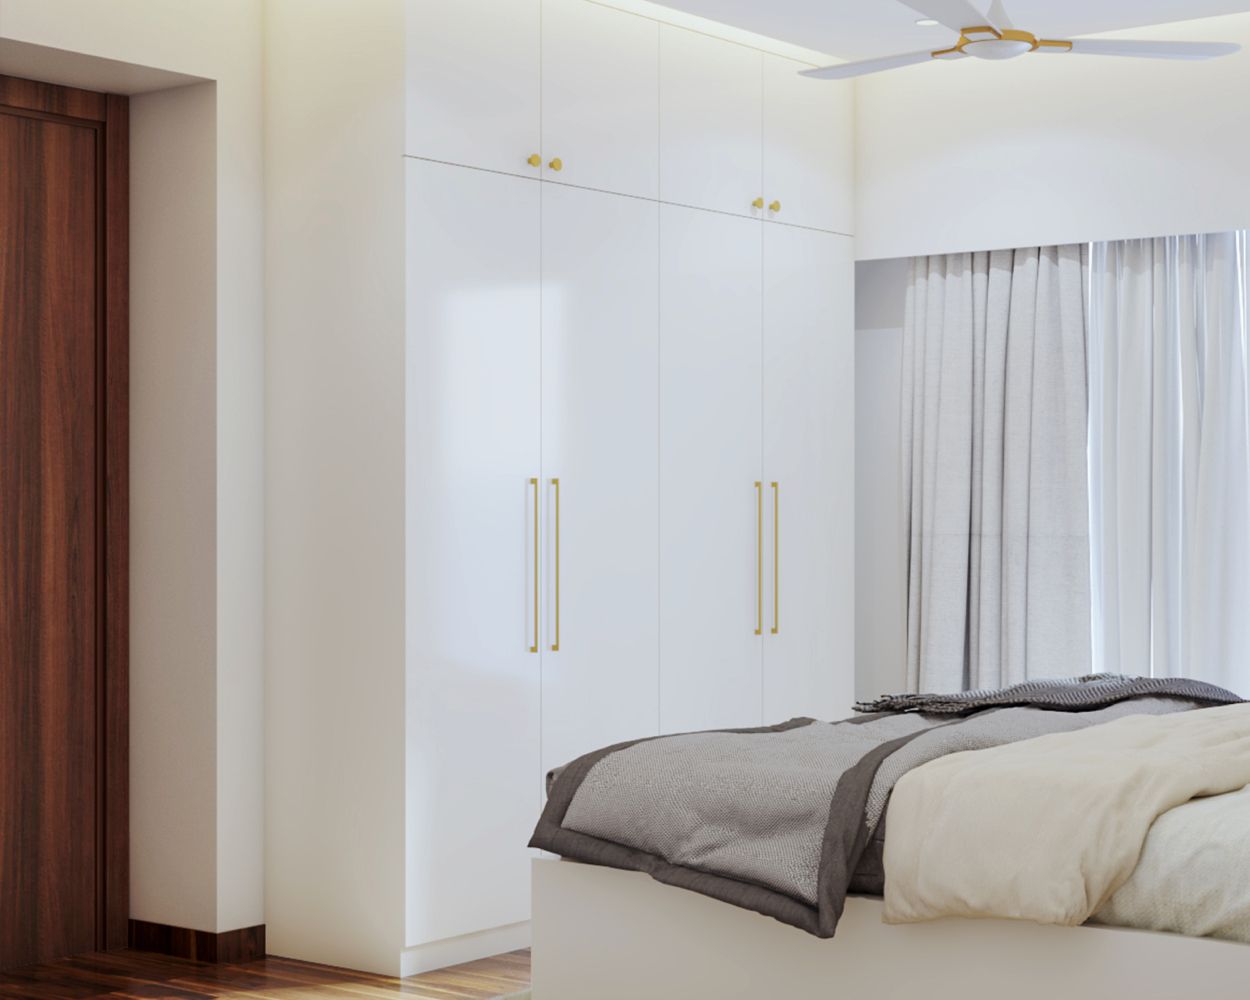 Minimal 4-Door White Swing Wardrobe Design With Loft Storage